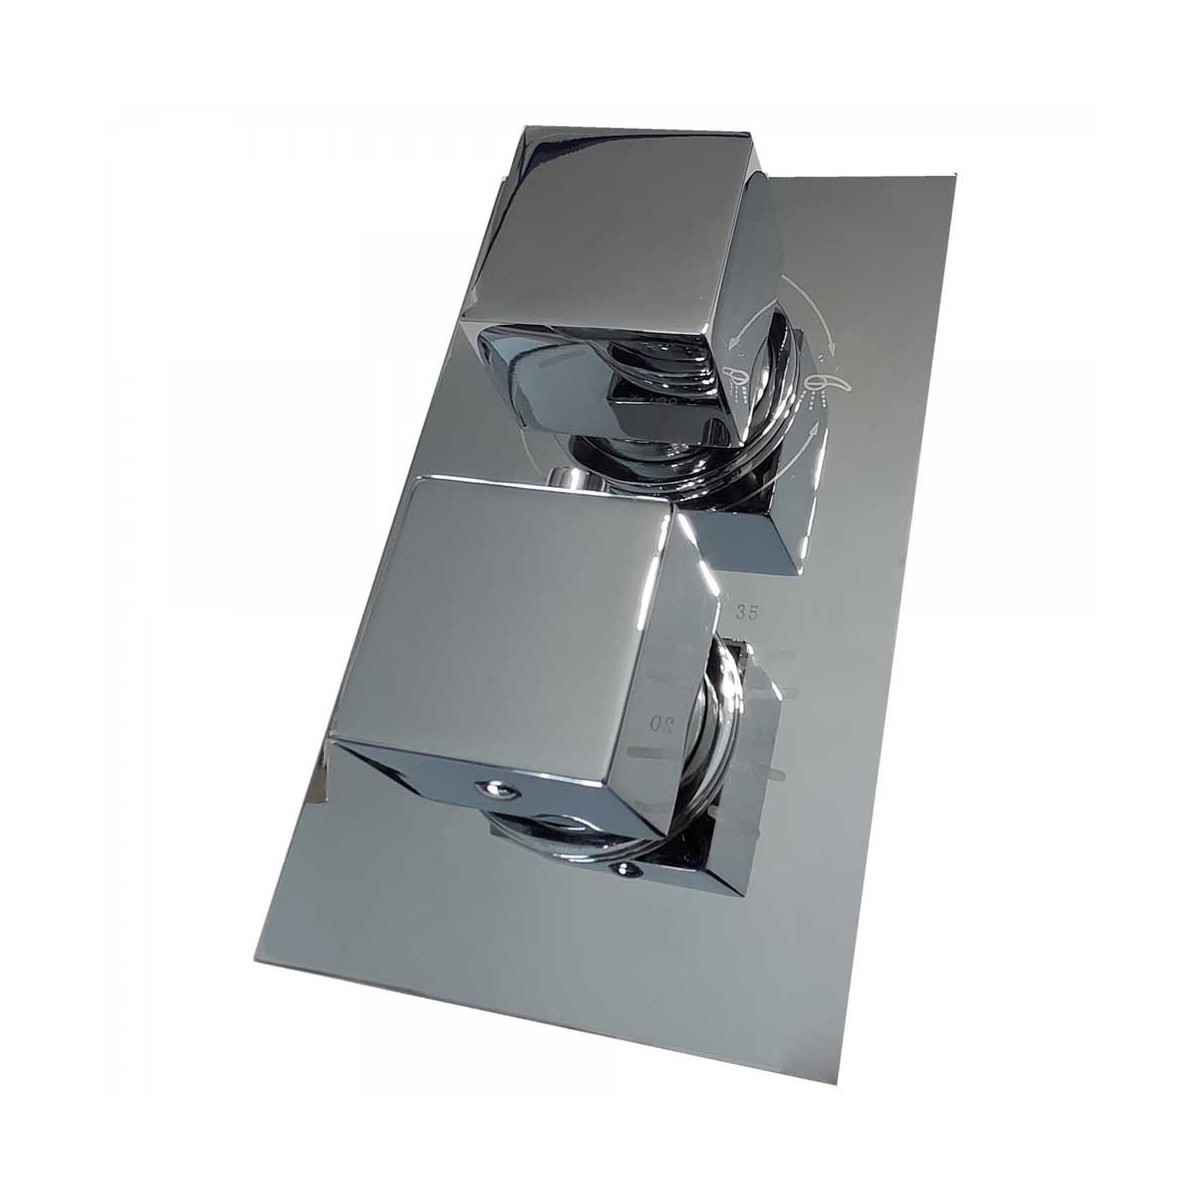 Eingebautes Duschset mit quadratischem Duschkopf, Arm, Thermostatmischer und Handbrause mit flexiblem Schlauch